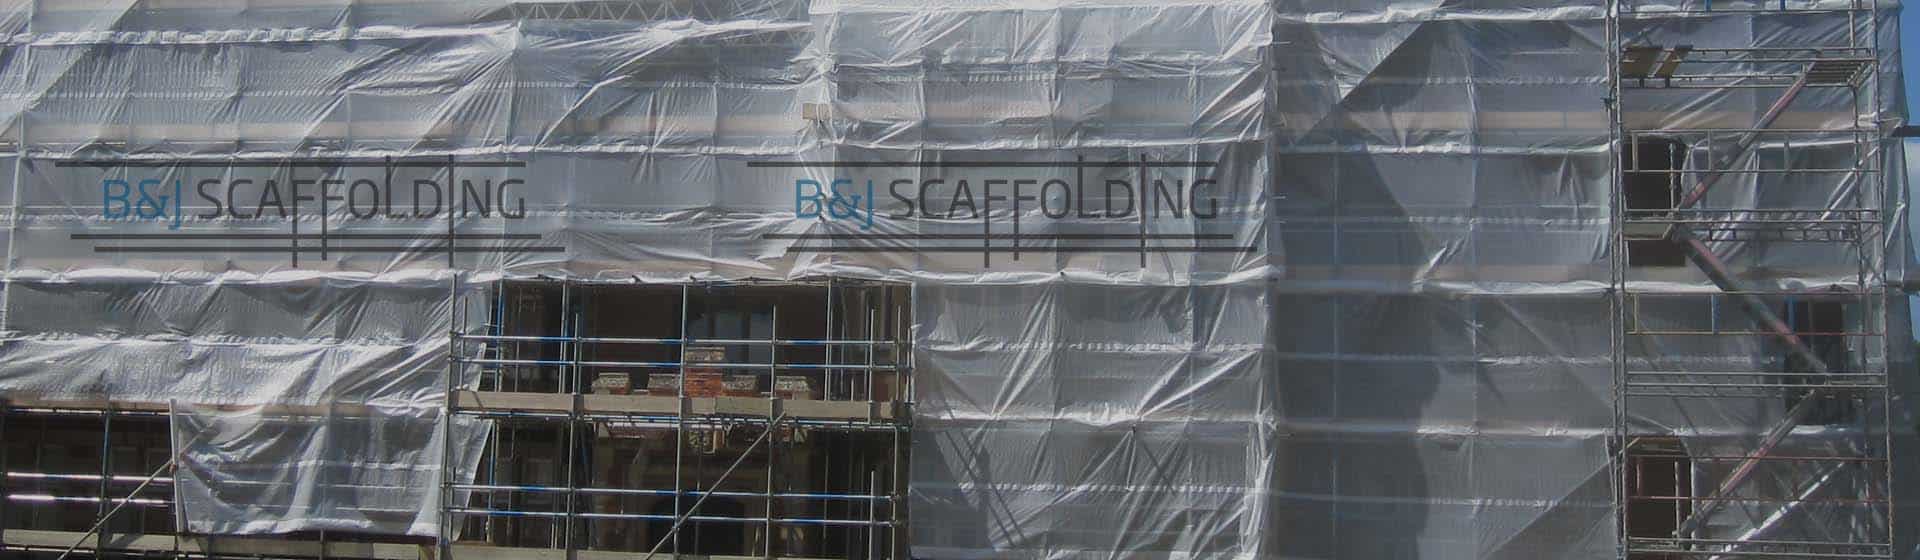 scaffolding slide 01